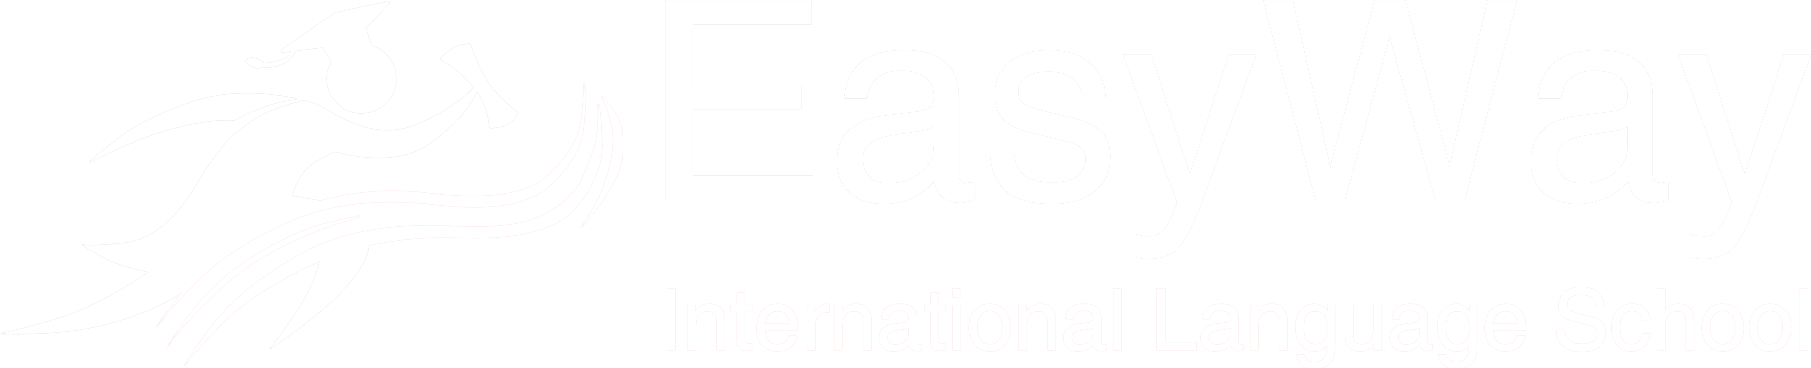 Logo de Easyway en blanco